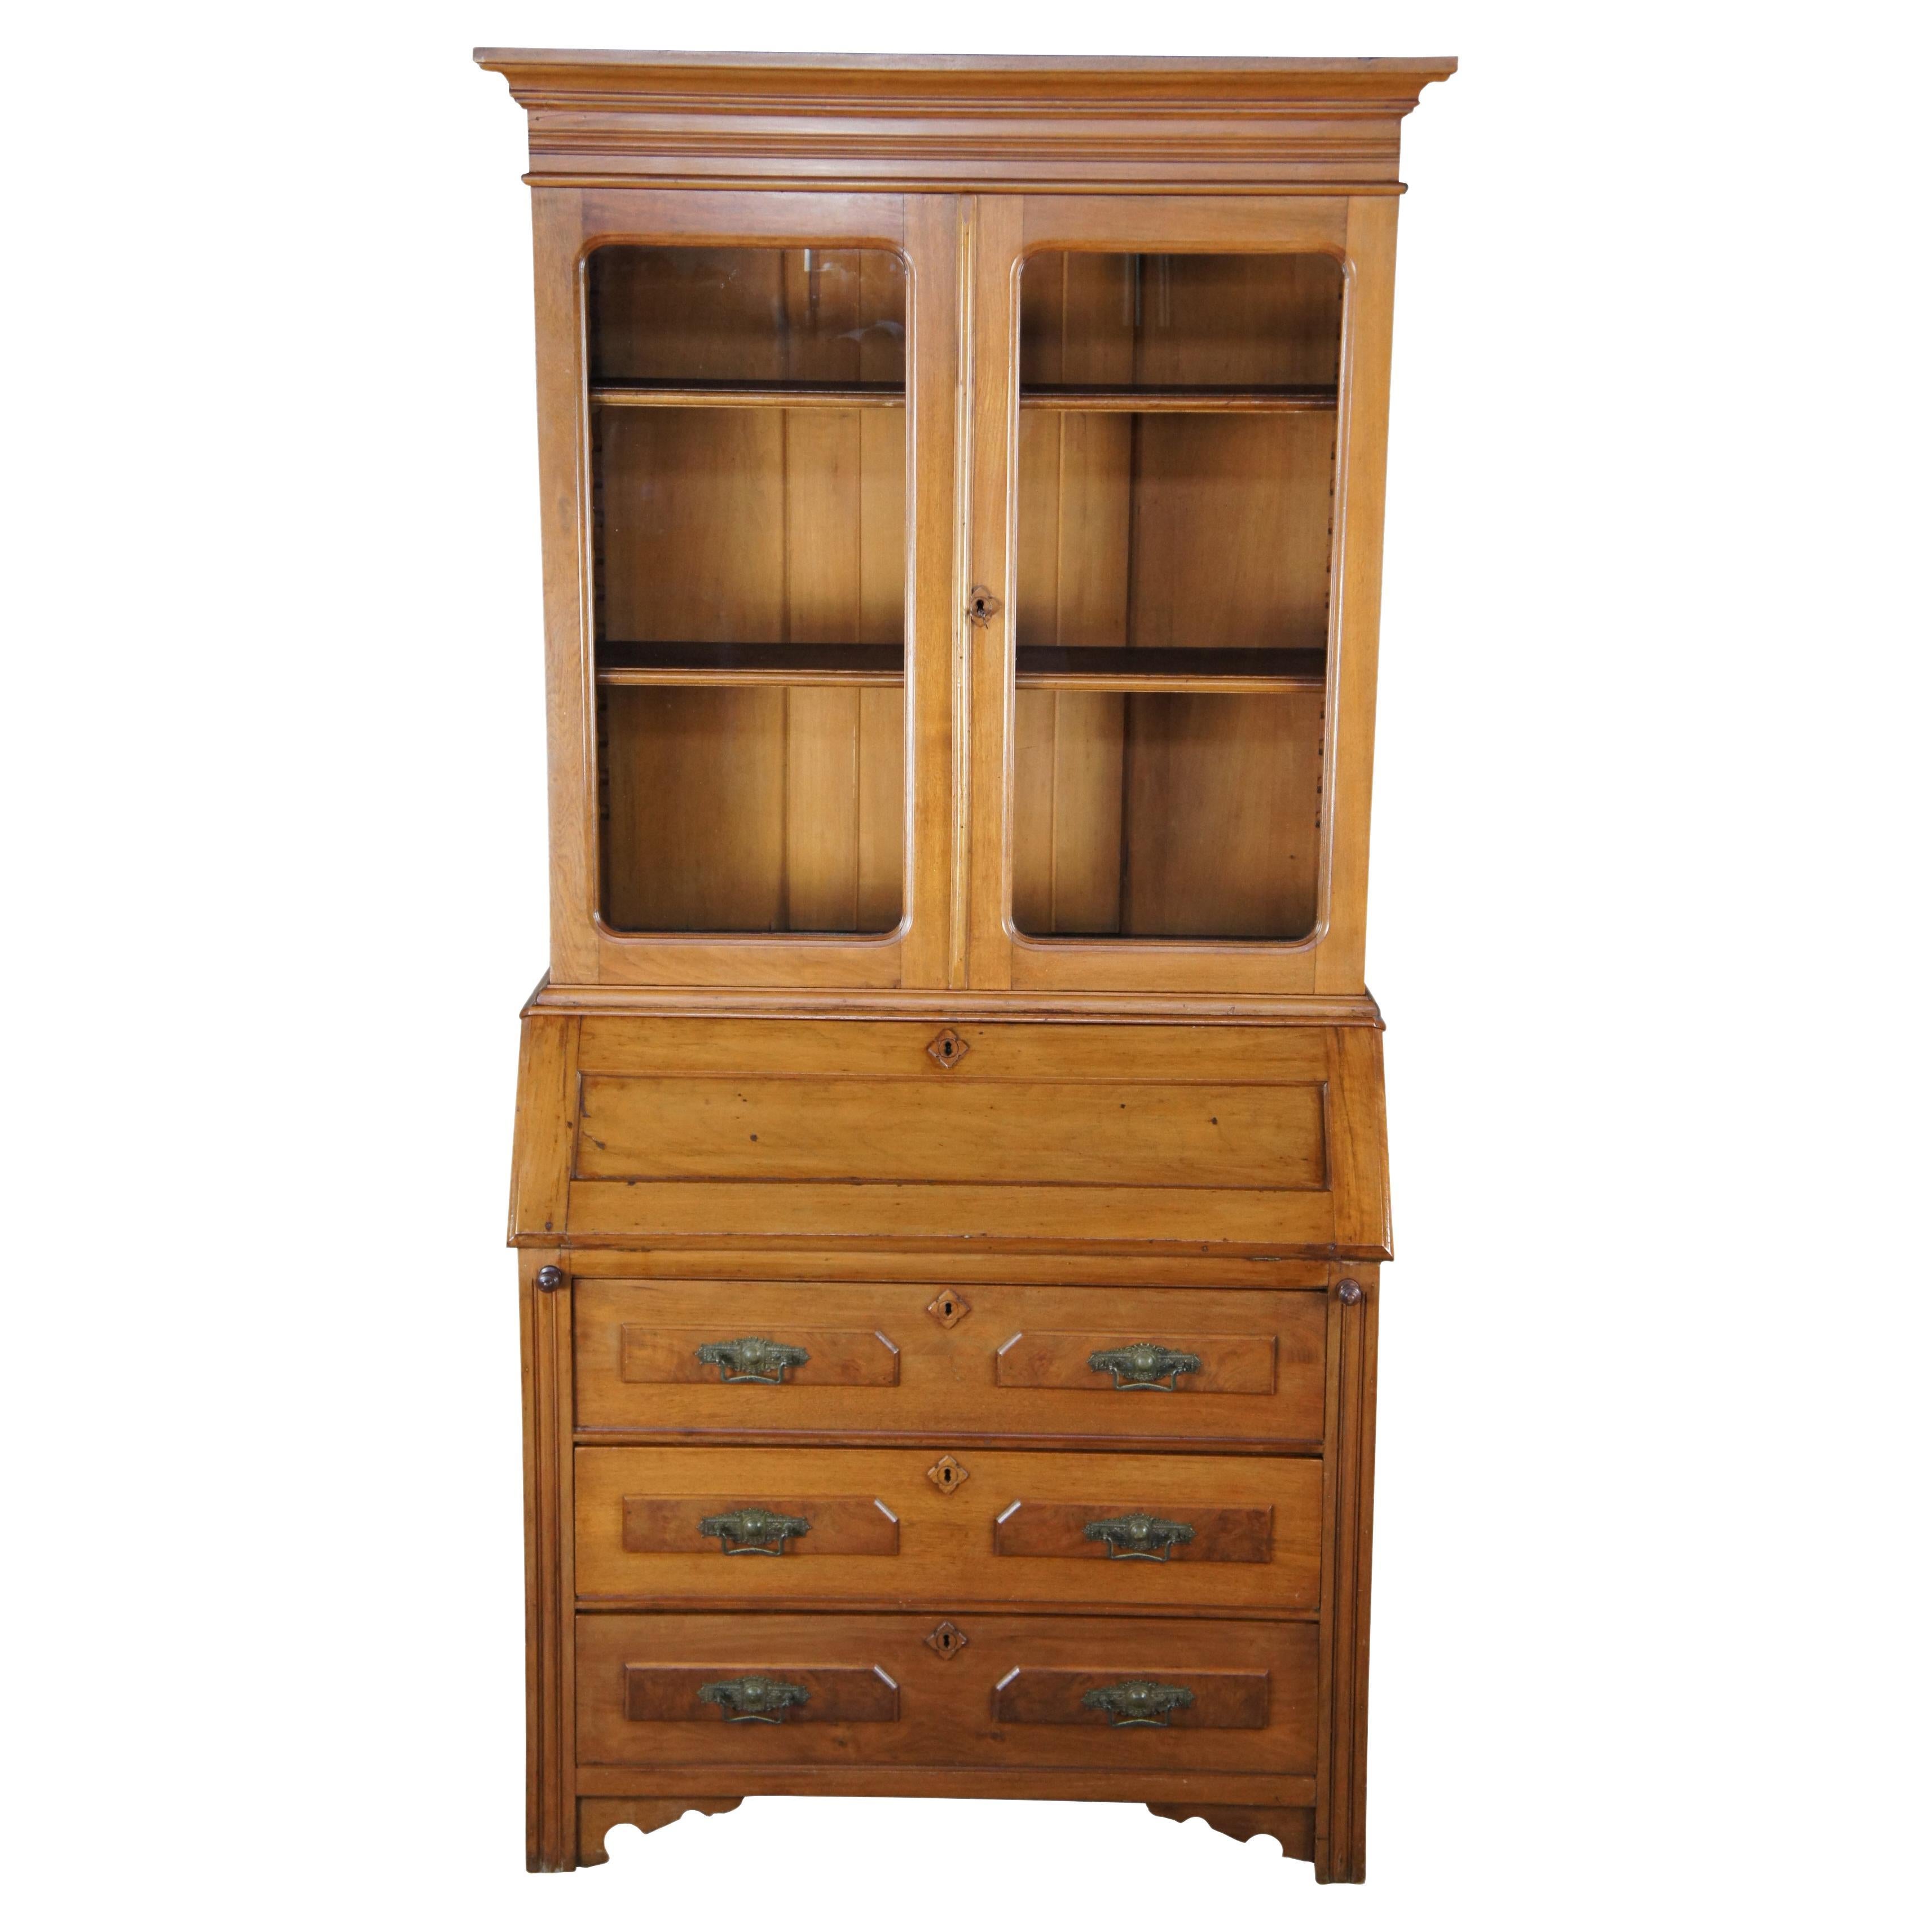 Antique Rockford Union Victorian Maple Secretary Desk & Bookcase Display Cabinet